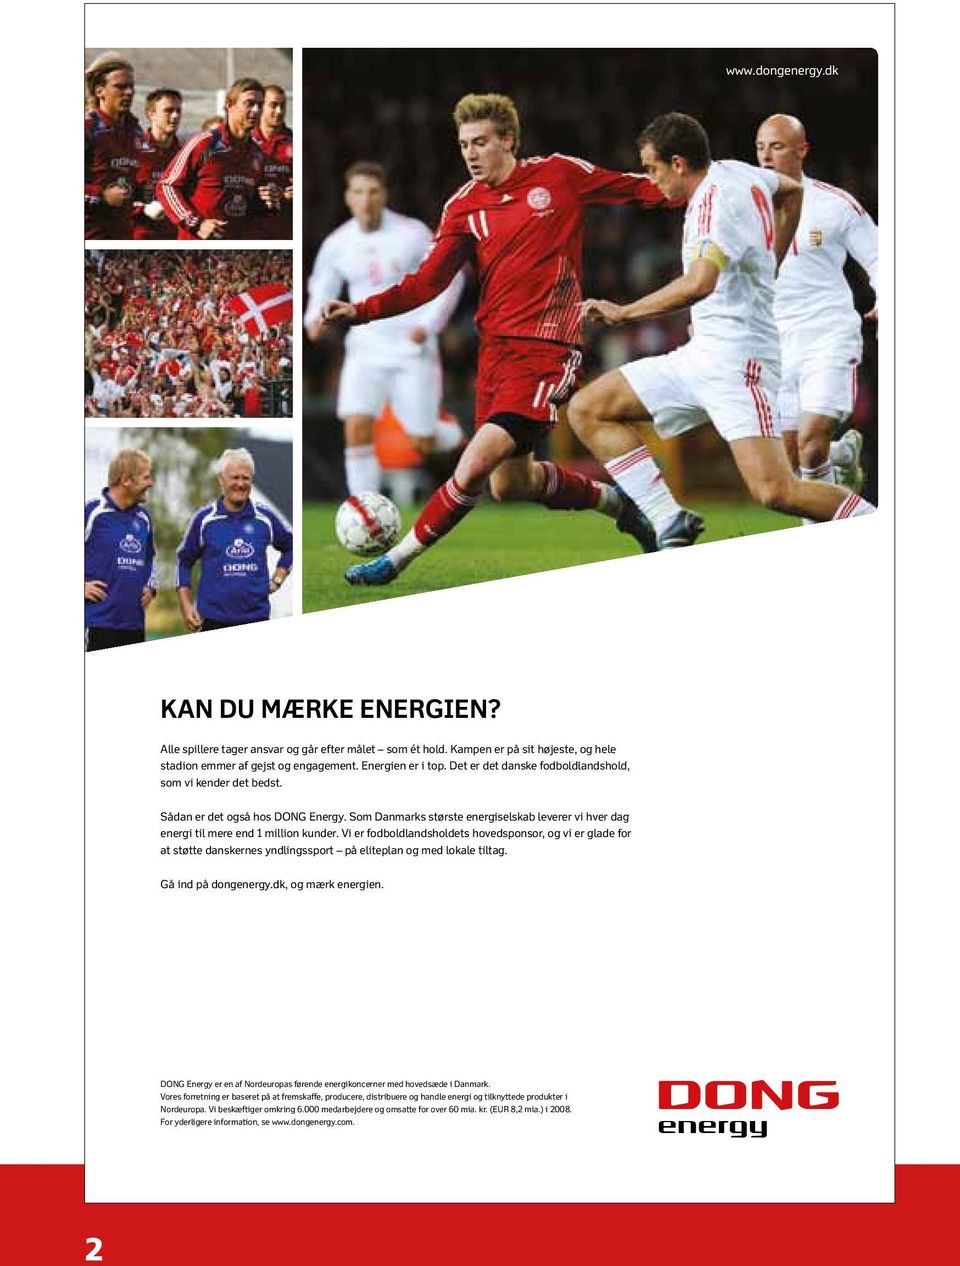 Vi er fodboldlandsholdets hovedsponsor, og vi er glade for at støtte danskernes yndlingssport på eliteplan og med lokale tiltag. Gå ind på dongenergy.dk, og mærk energien.